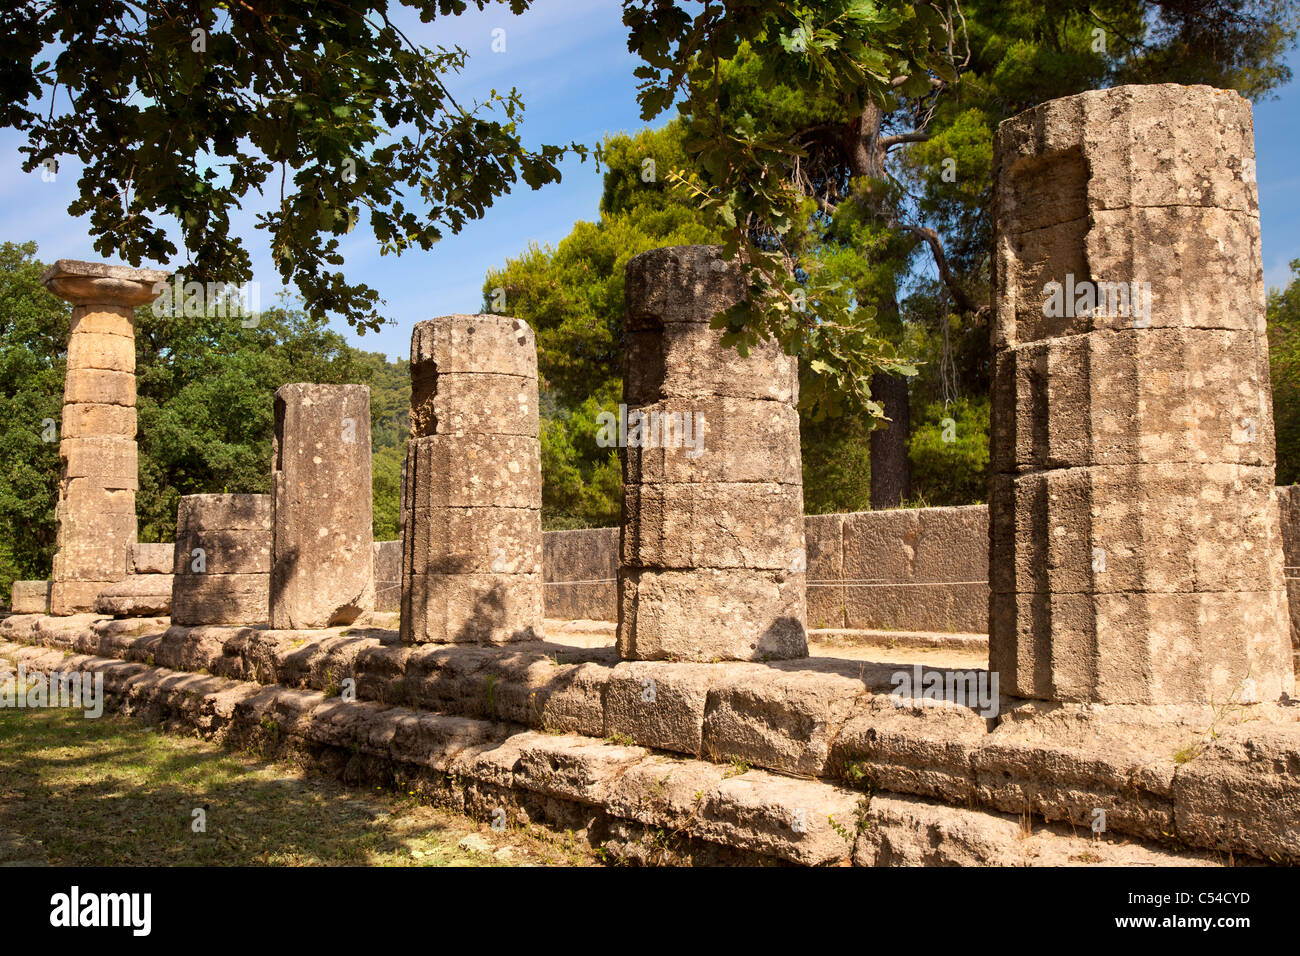 Las columnas del antiguo templo de Hera en Olimpia, Grecia - hogar de los Juegos Olímpicos originales, empezando en el año 776 A.C. Foto de stock